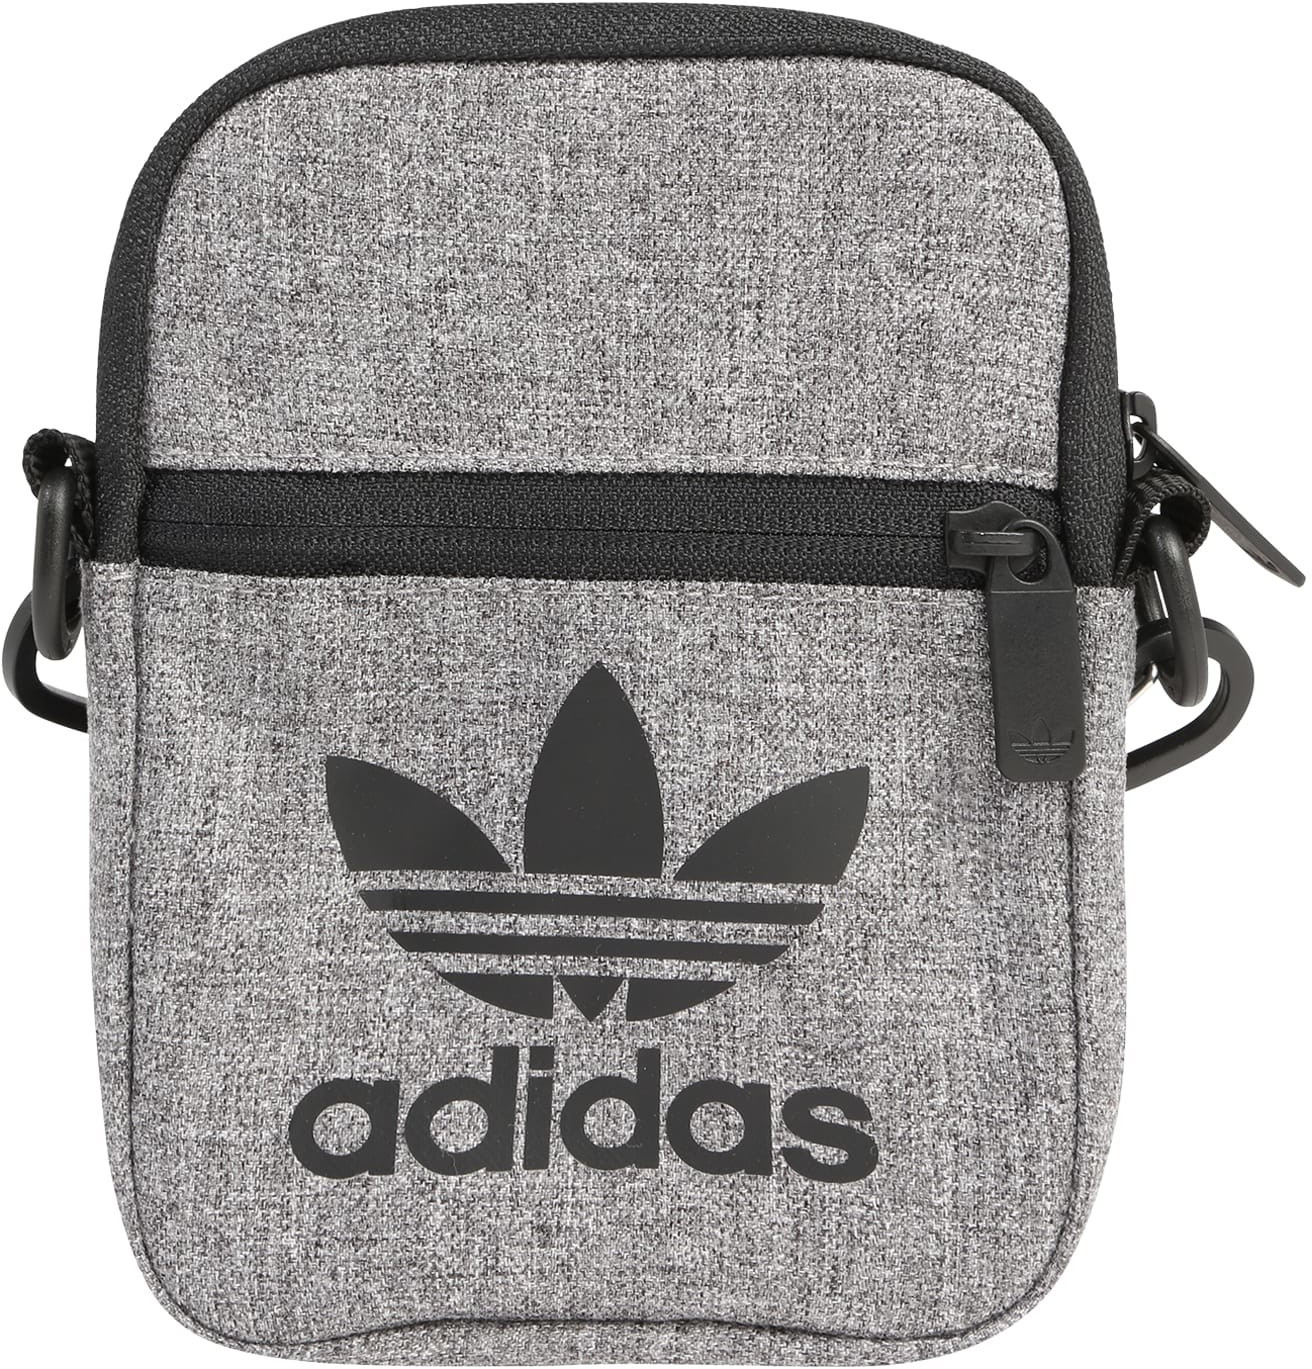 Adidas Mel Fest Bag (ED8687)